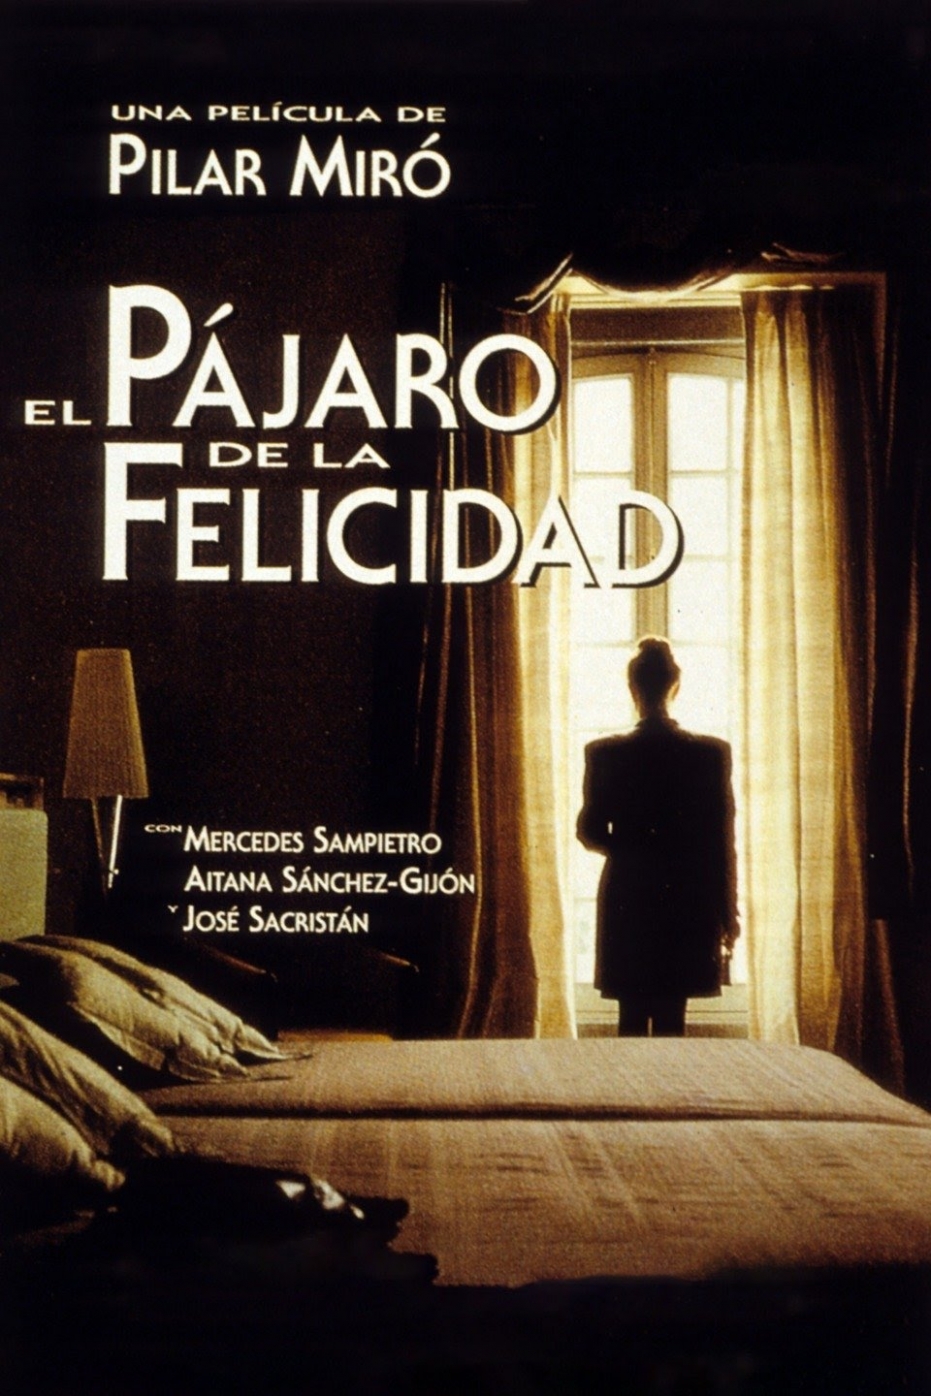 Homenaje a la figura y obra de Pilar Miró: proyección de 'El pájaro de la felicidad' en colaboración con Filmoteca Española. Coloquio posterior